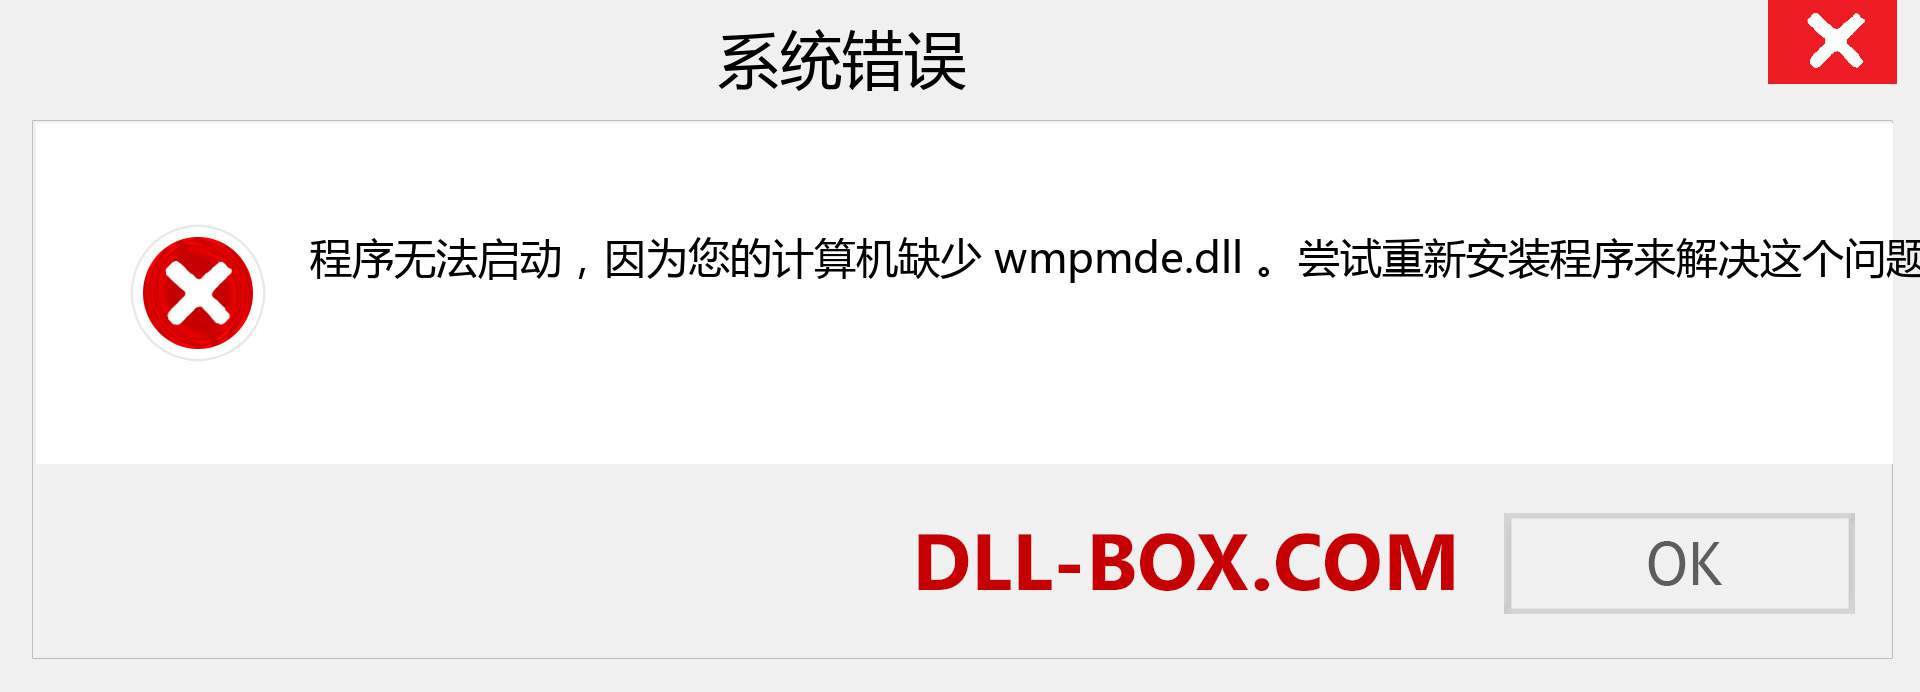 wmpmde.dll 文件丢失？。 适用于 Windows 7、8、10 的下载 - 修复 Windows、照片、图像上的 wmpmde dll 丢失错误